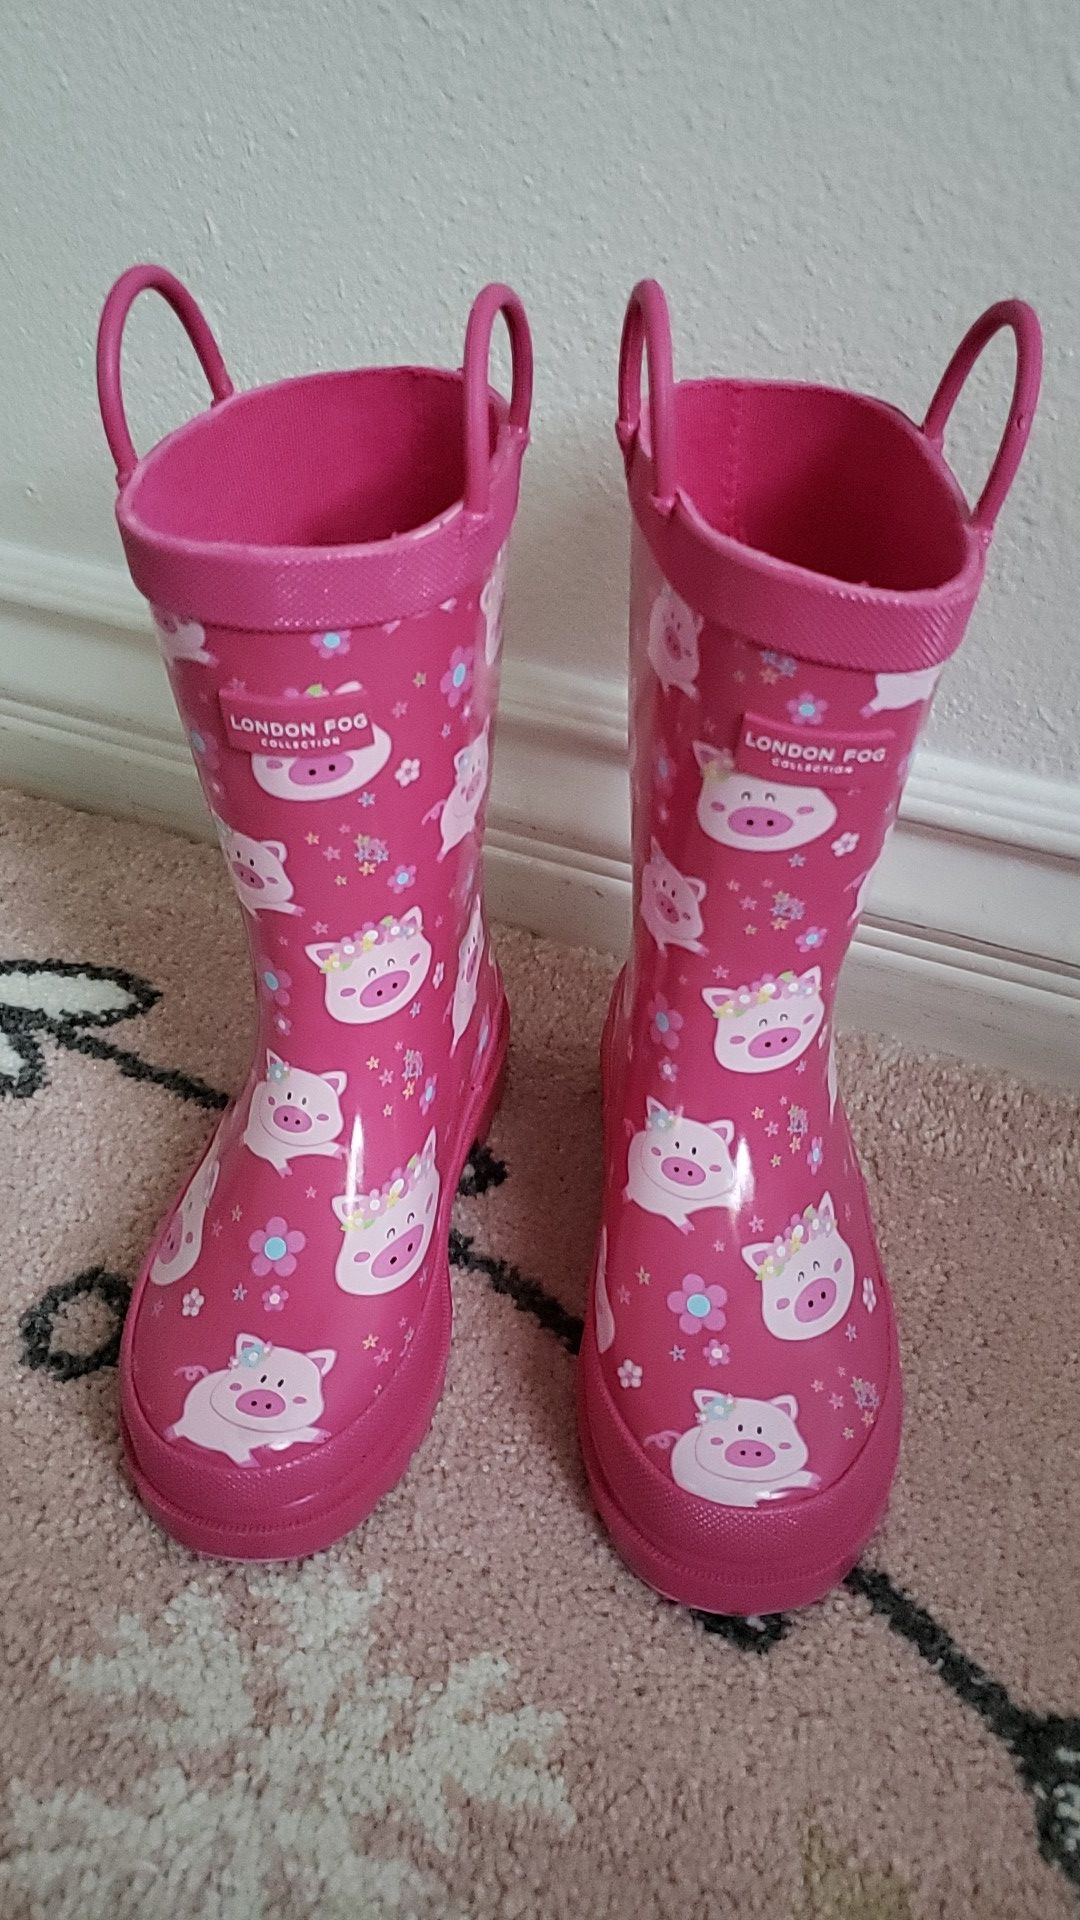 Brand new girls rain boot size 10